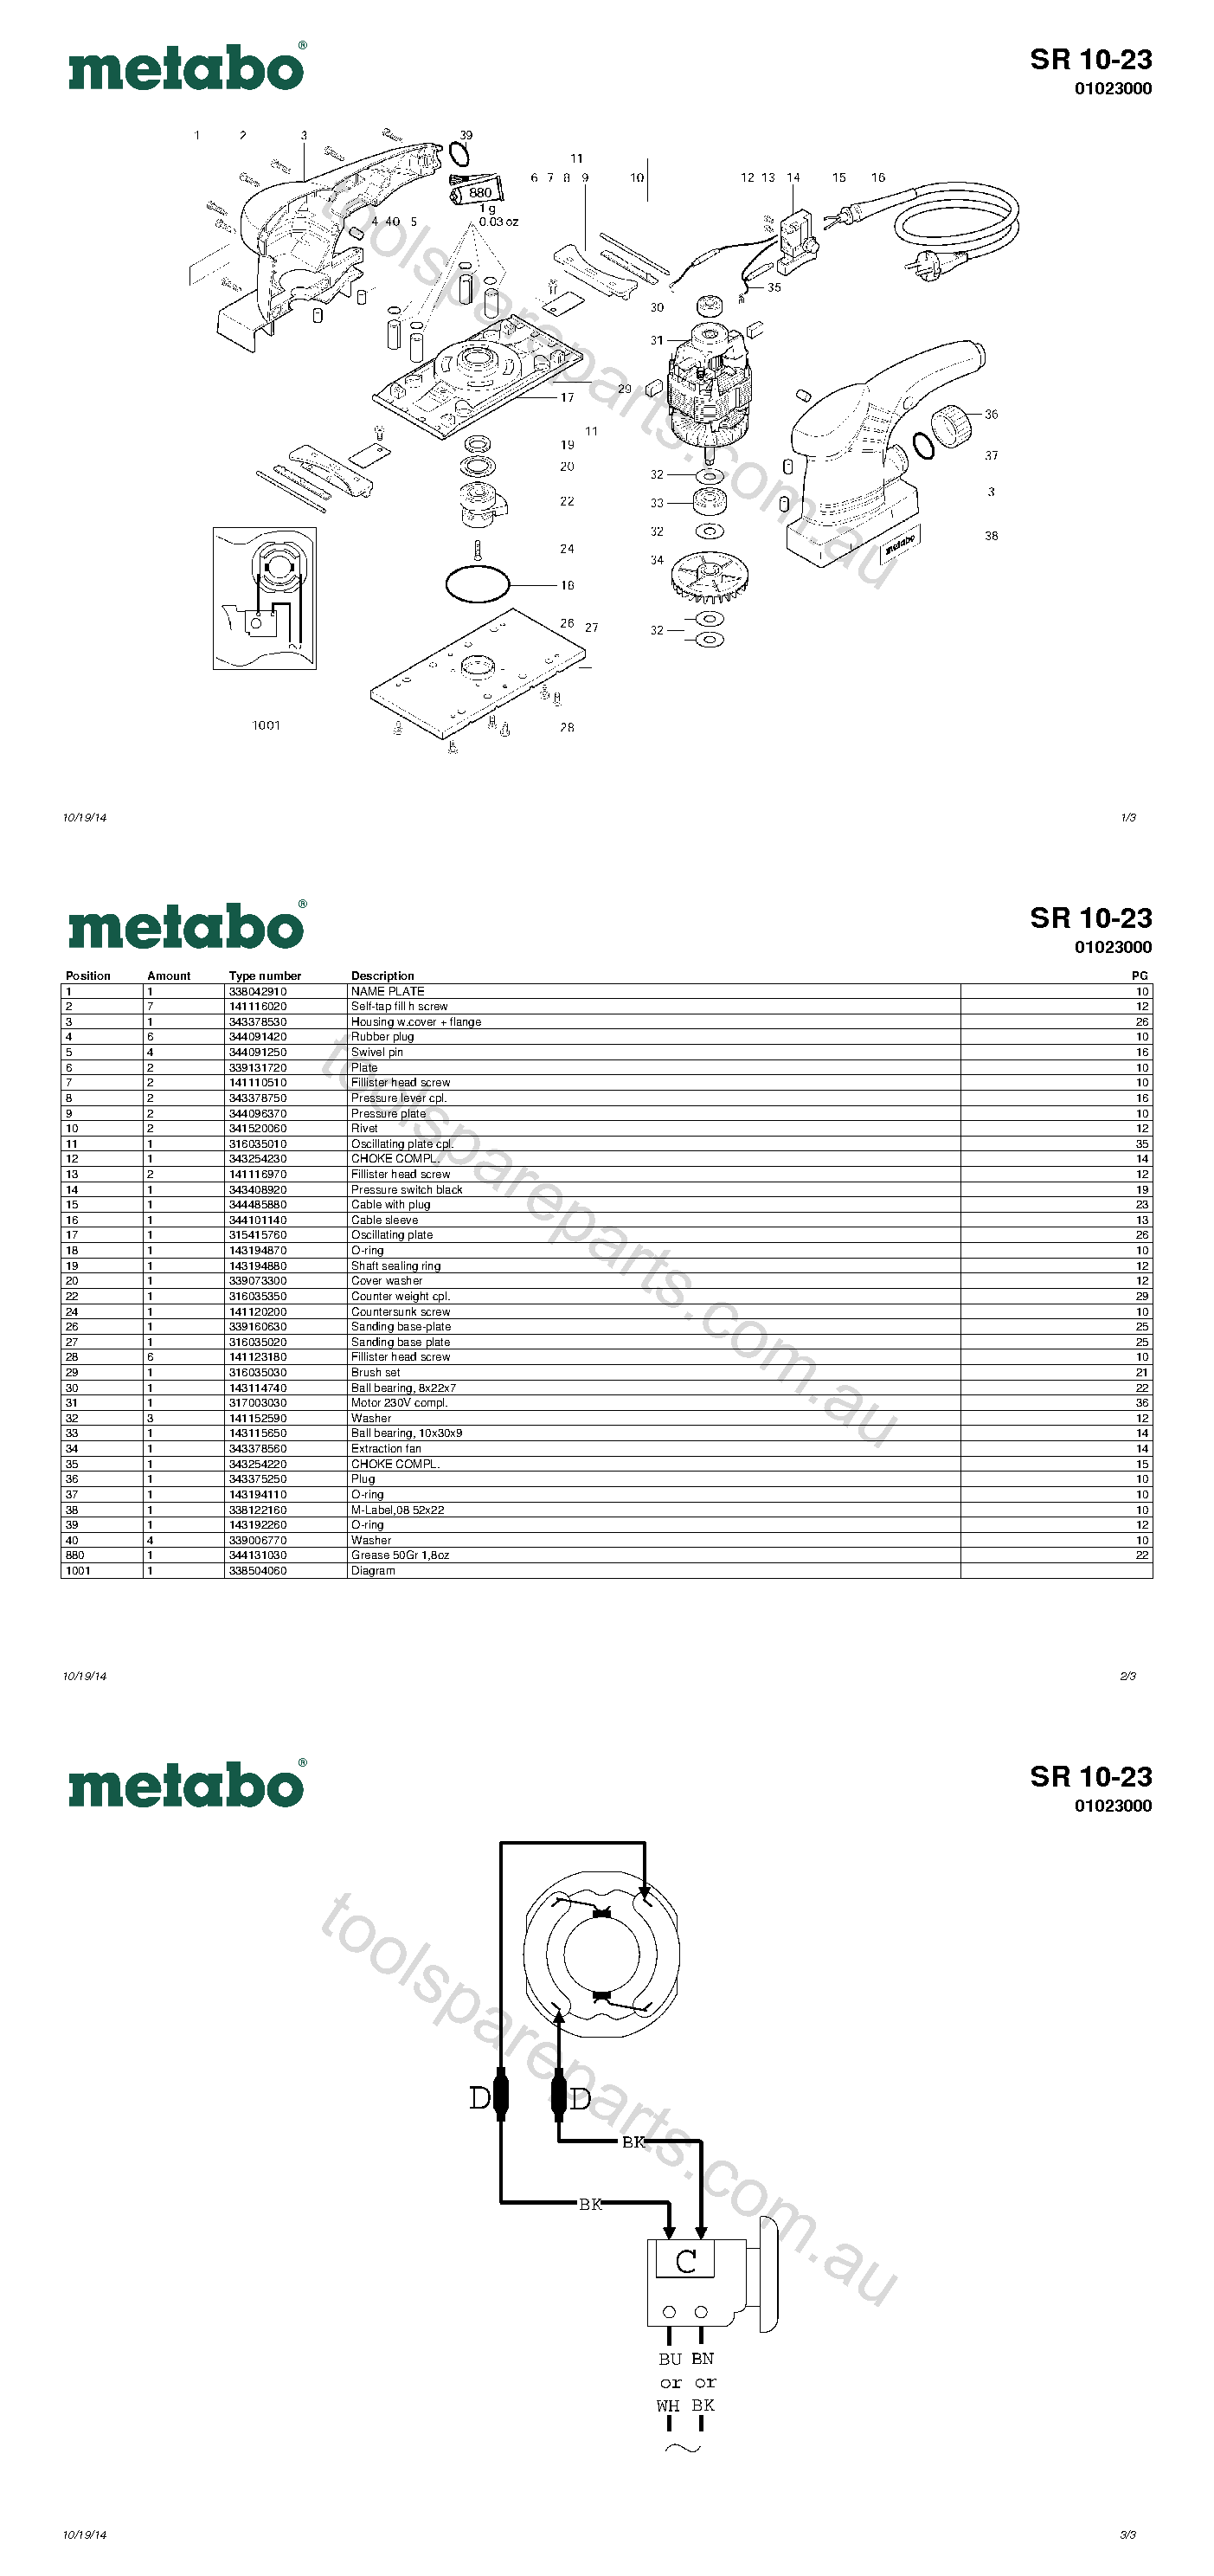 Metabo SR 10-23 01023000  Diagram 1